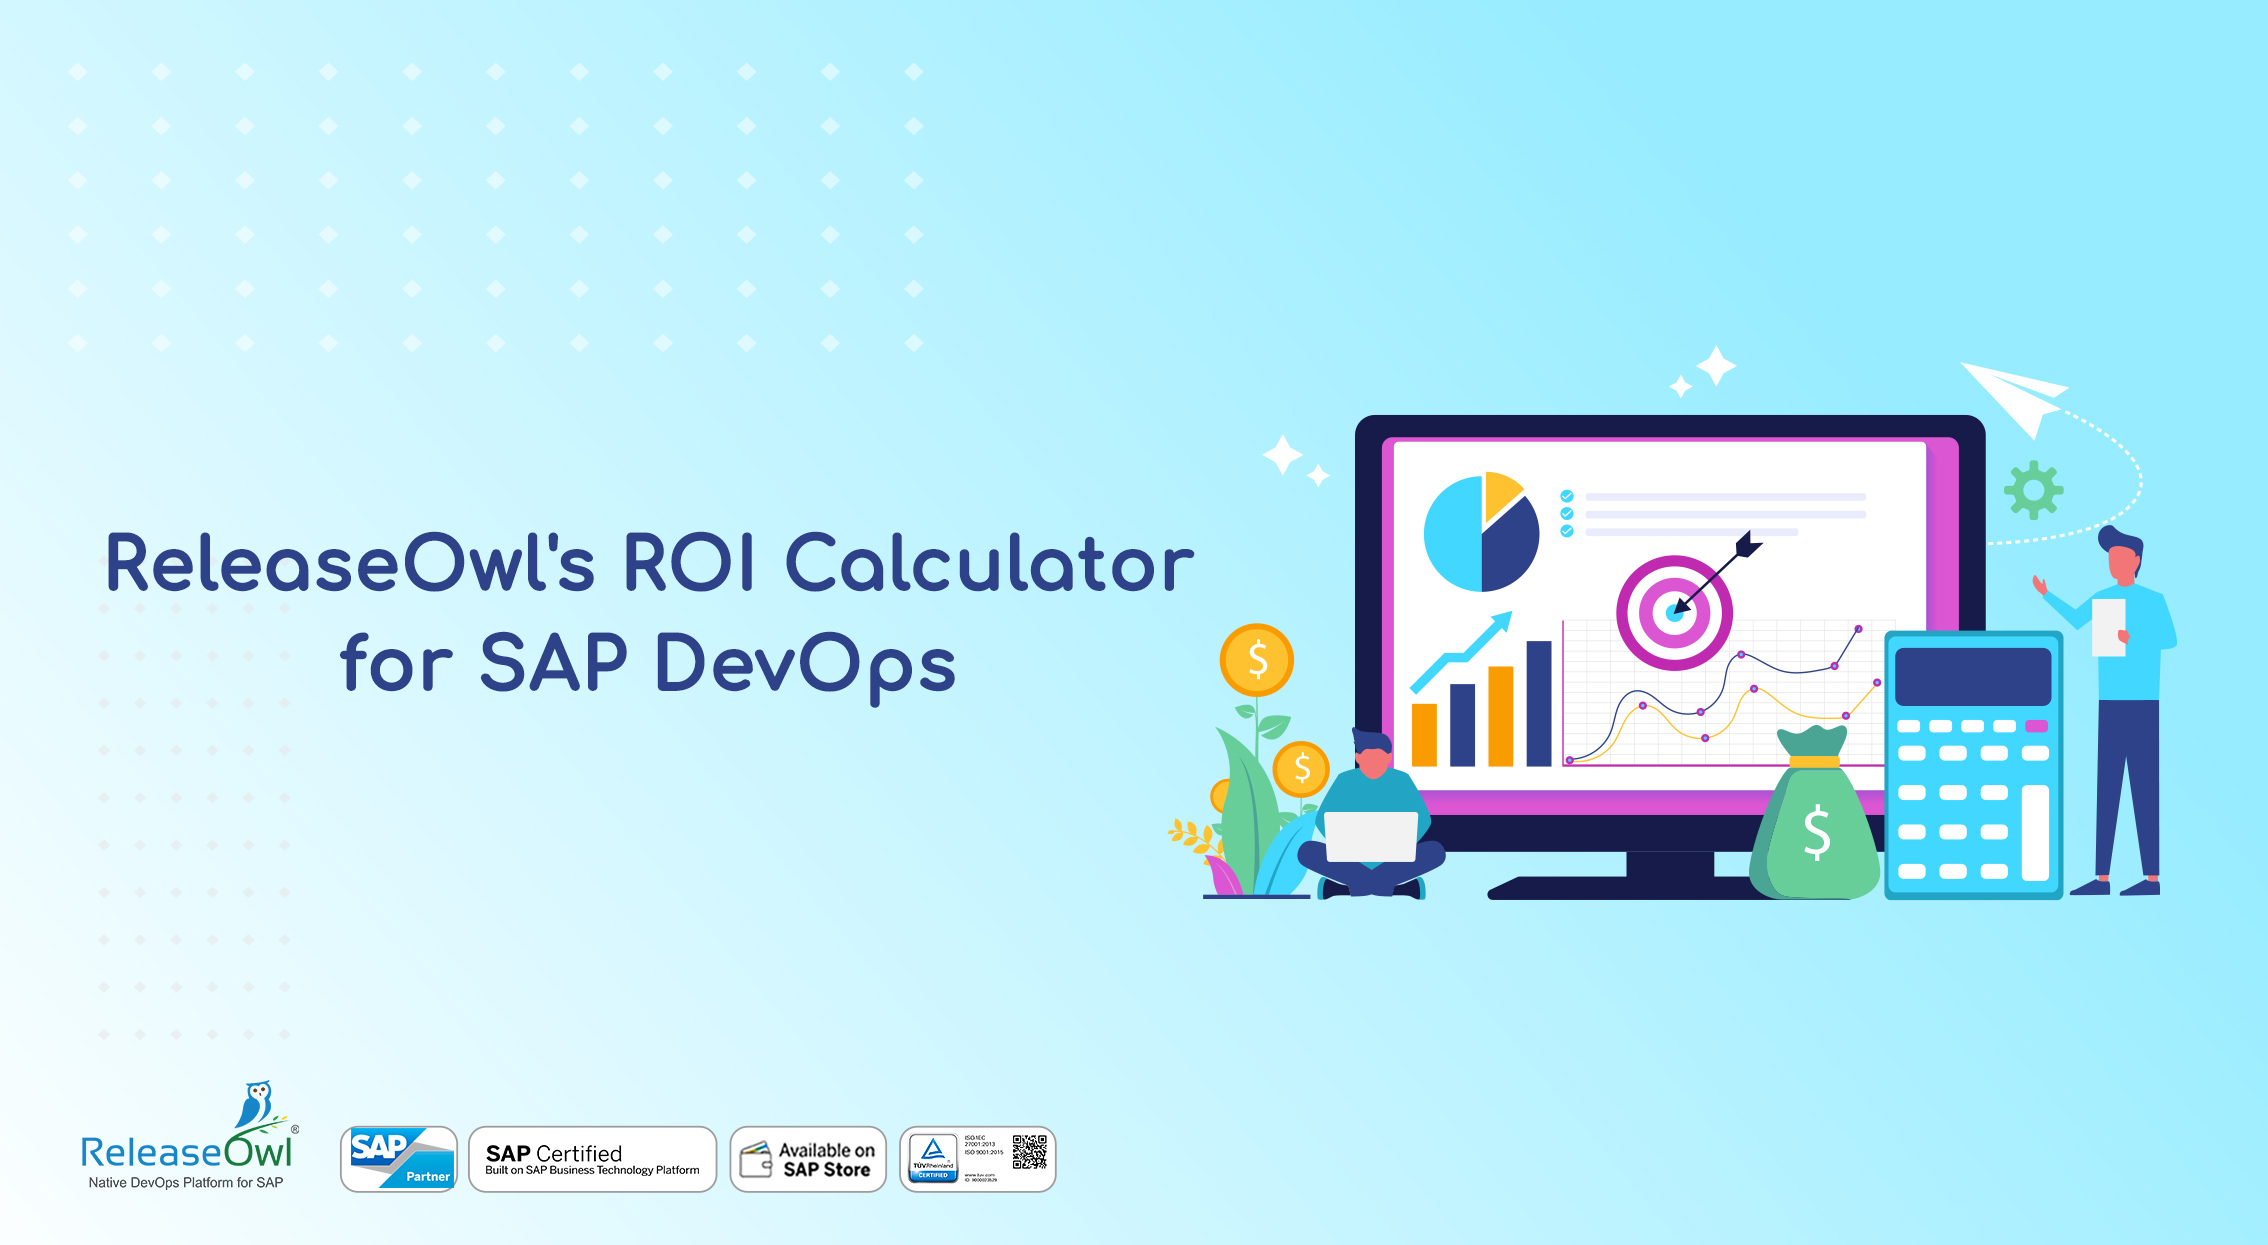 ReleaseOwl's ROI Calculator for SAP DevOps